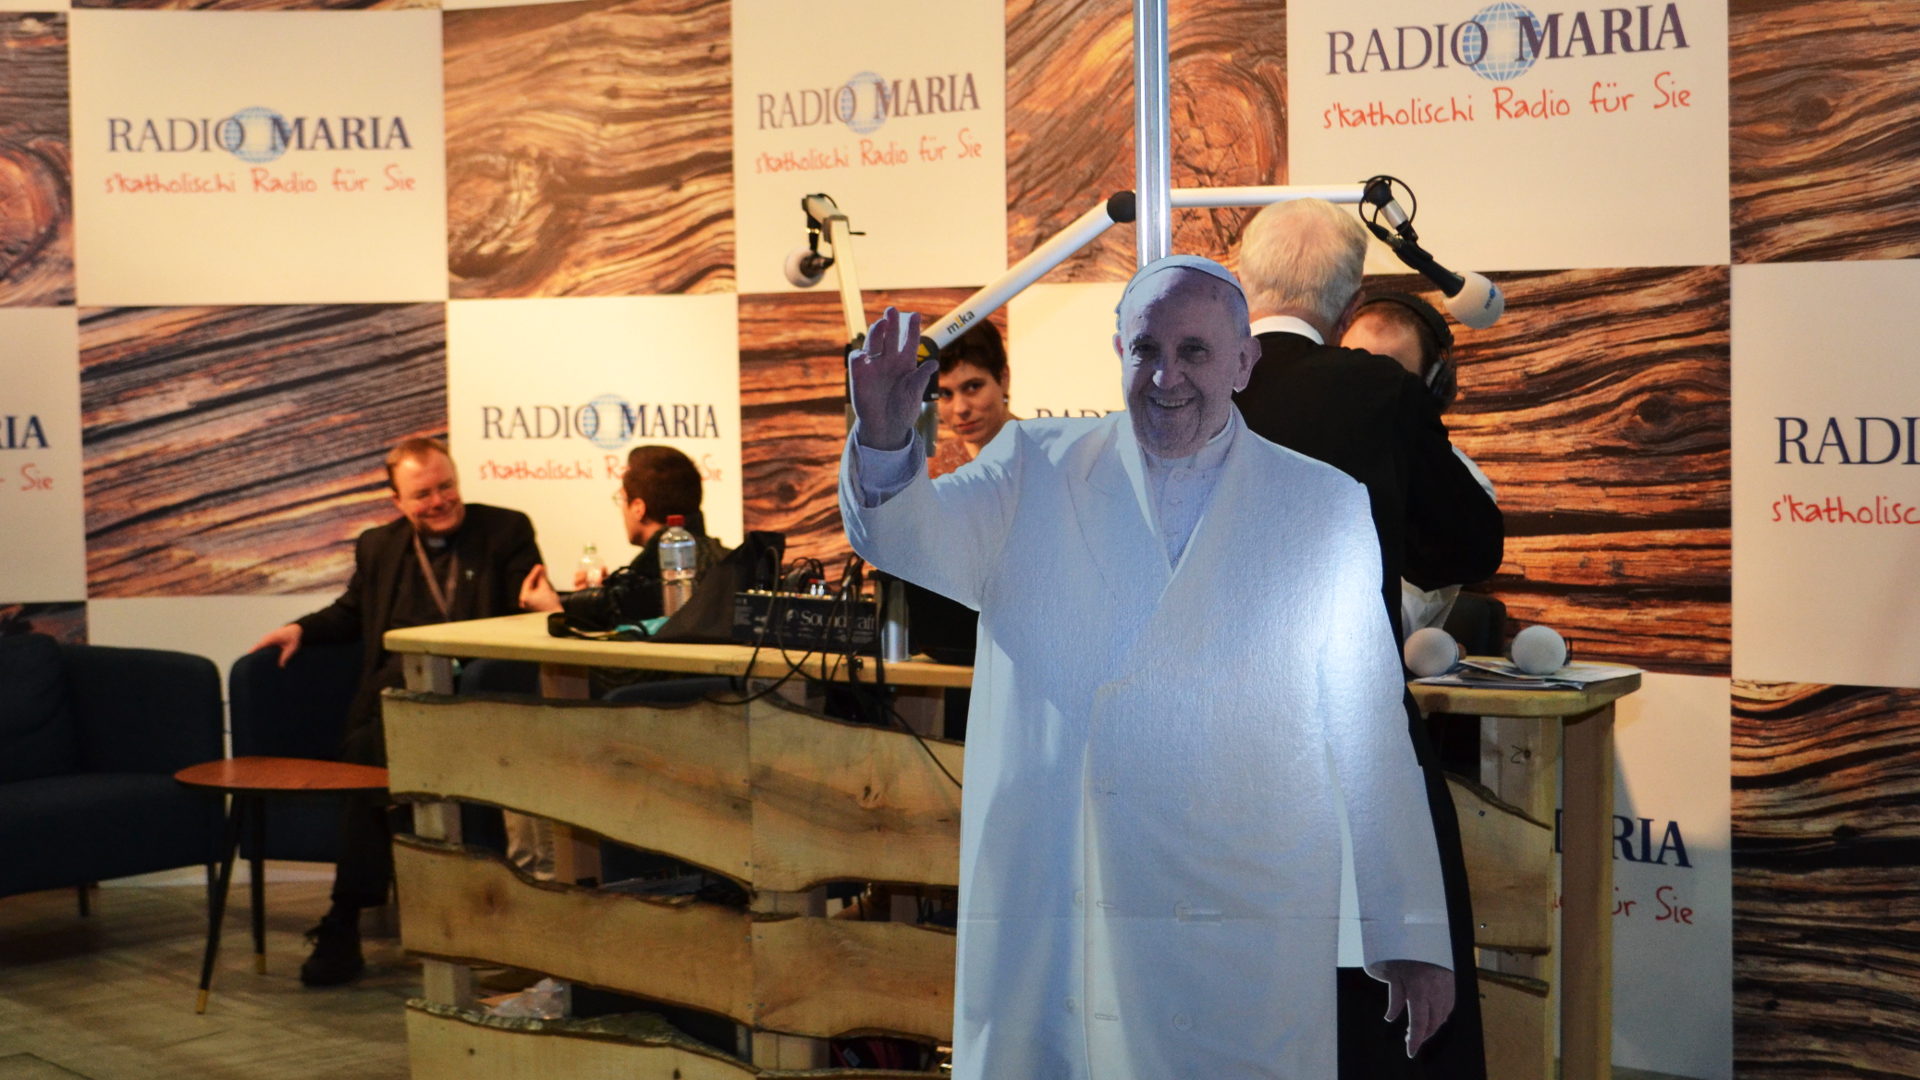 Papst Franziskus aus Pappkarton am Stand von Radio Maria – links im Hintergrund ist Pfarrer Rellstab.